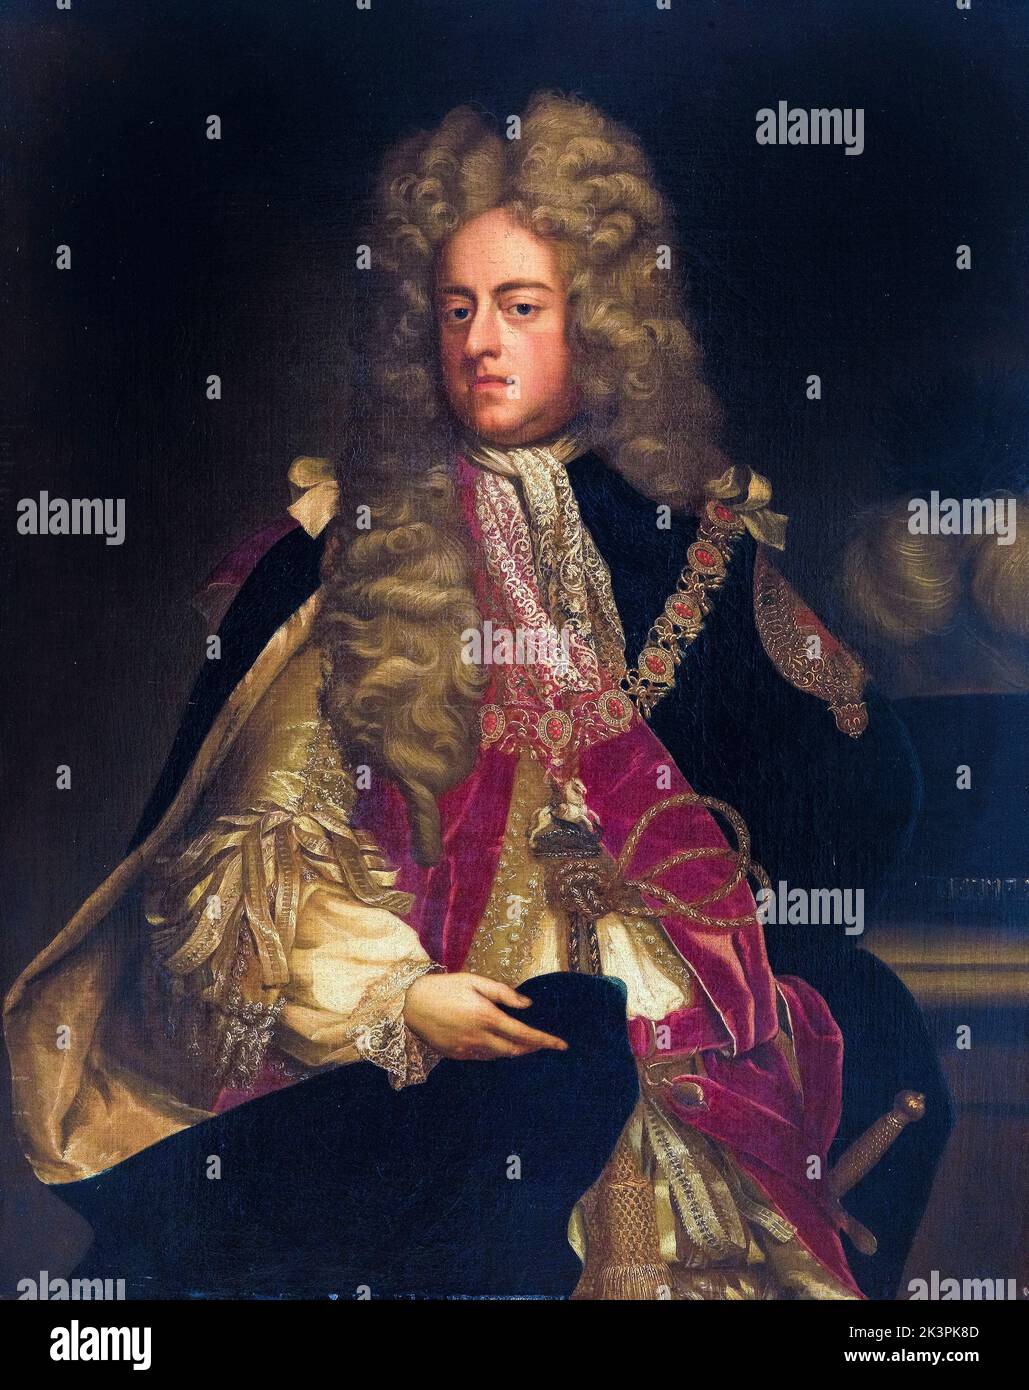 Rey Jorge I de Gran Bretaña e Irlanda (1660-1727), Reign (1714-1727), retrato pintado al óleo sobre lienzo por artista de la Escuela de Inglés, 1700-1799 Foto de stock